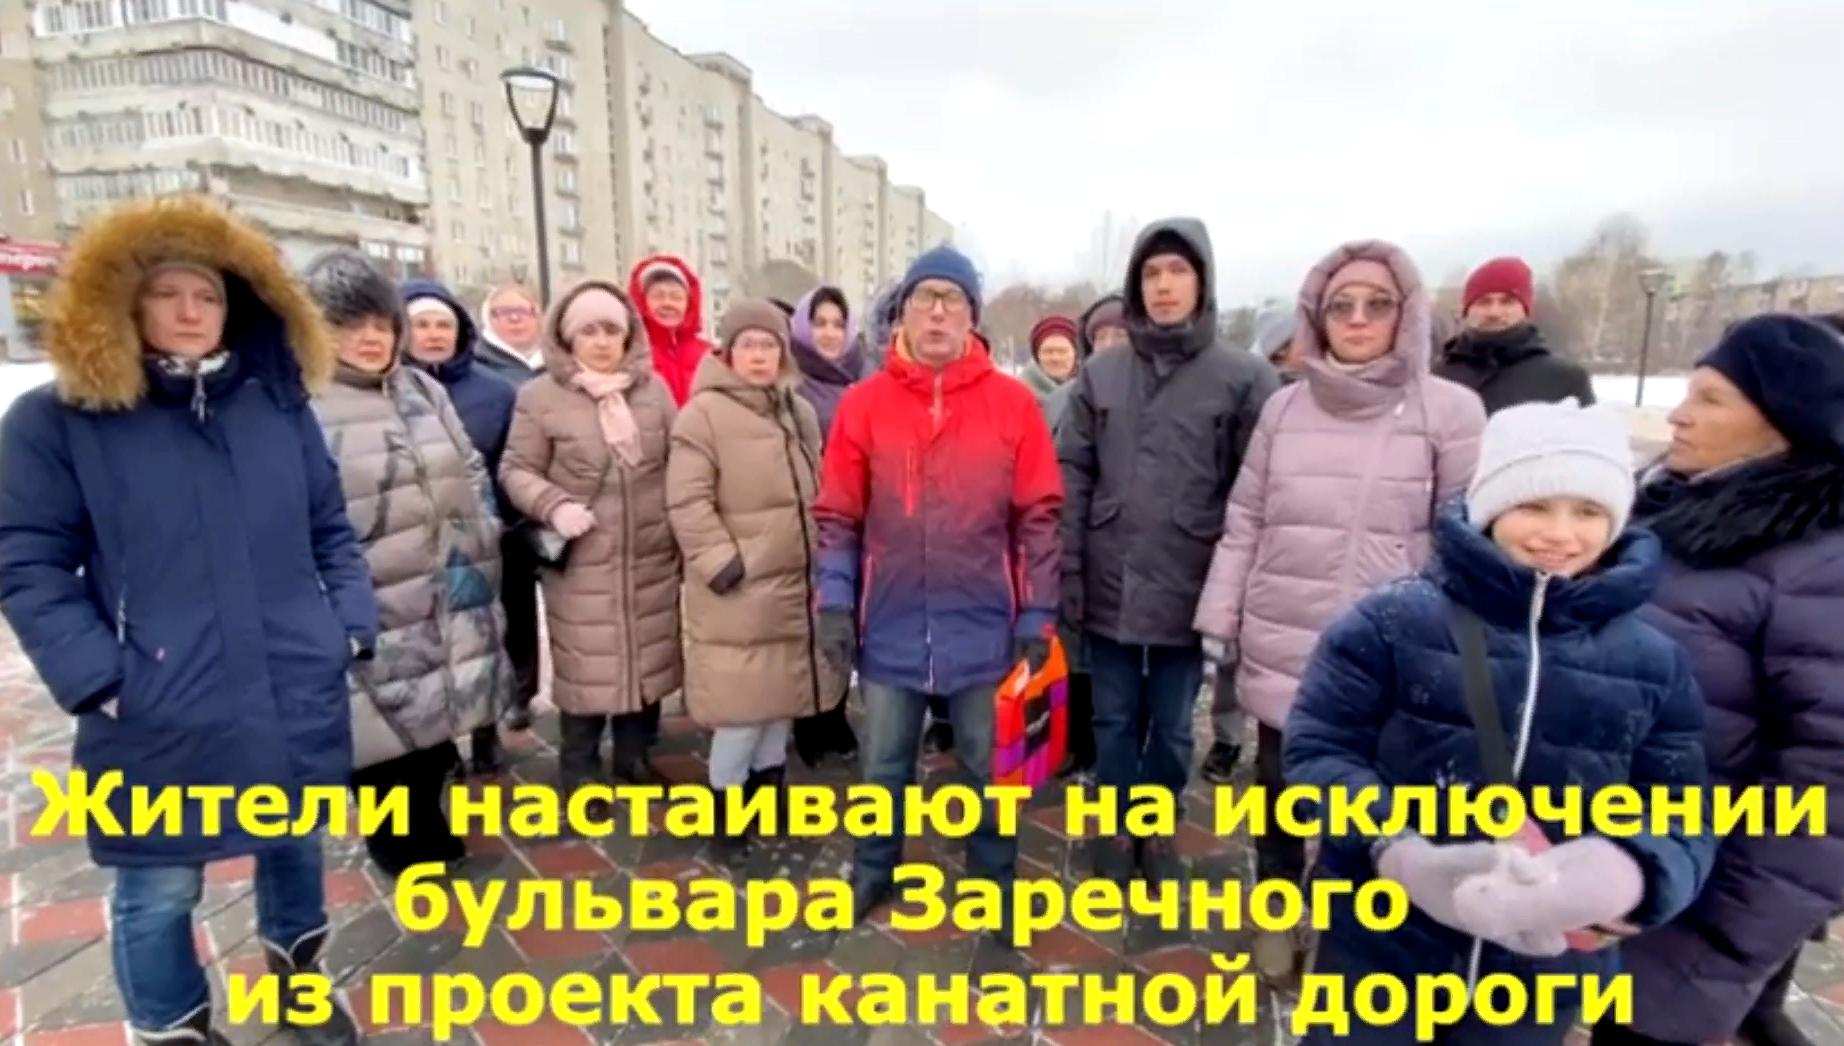 Нижегородцы обратились к Путину из-за строительства канатки на Заречном бульваре - фото 1